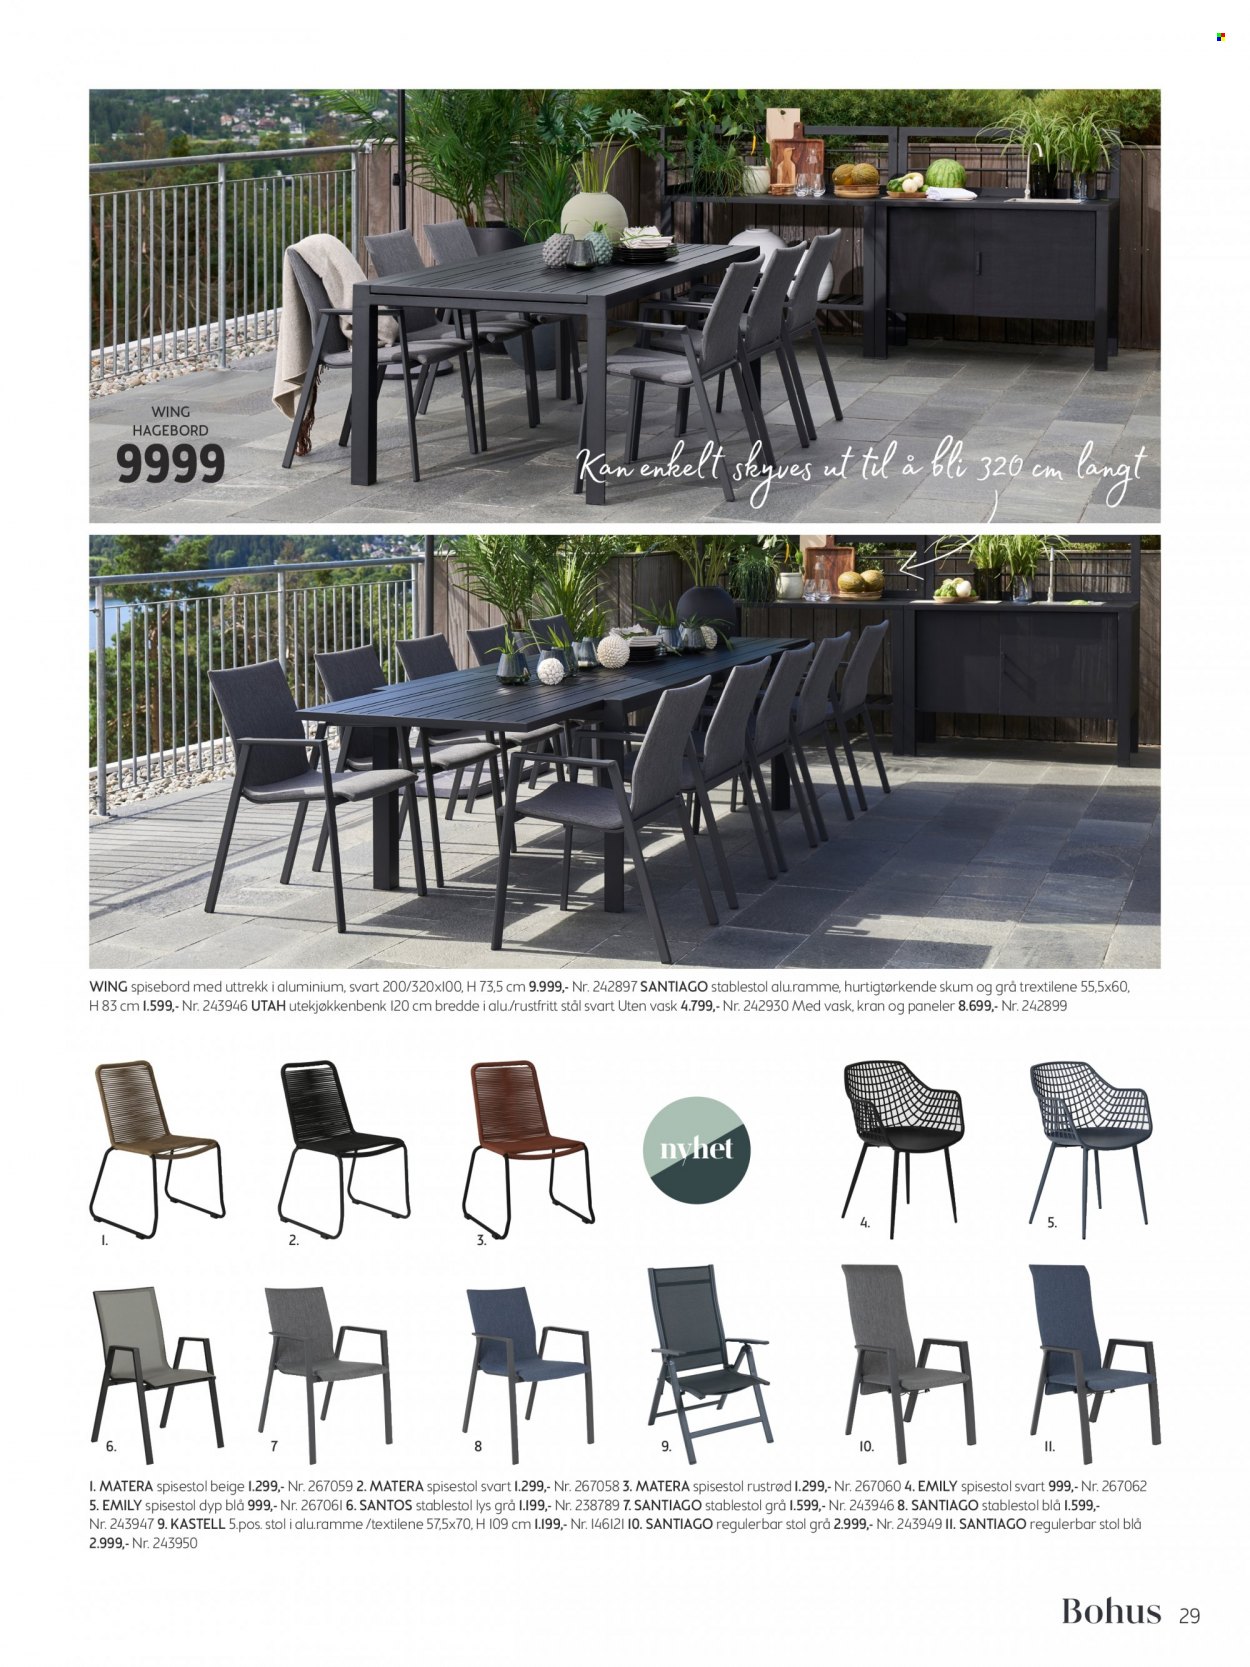 Kundeavis Bohus - Produkter fra tilbudsaviser - stol, spisebord, spisestol, lys. Side 29.